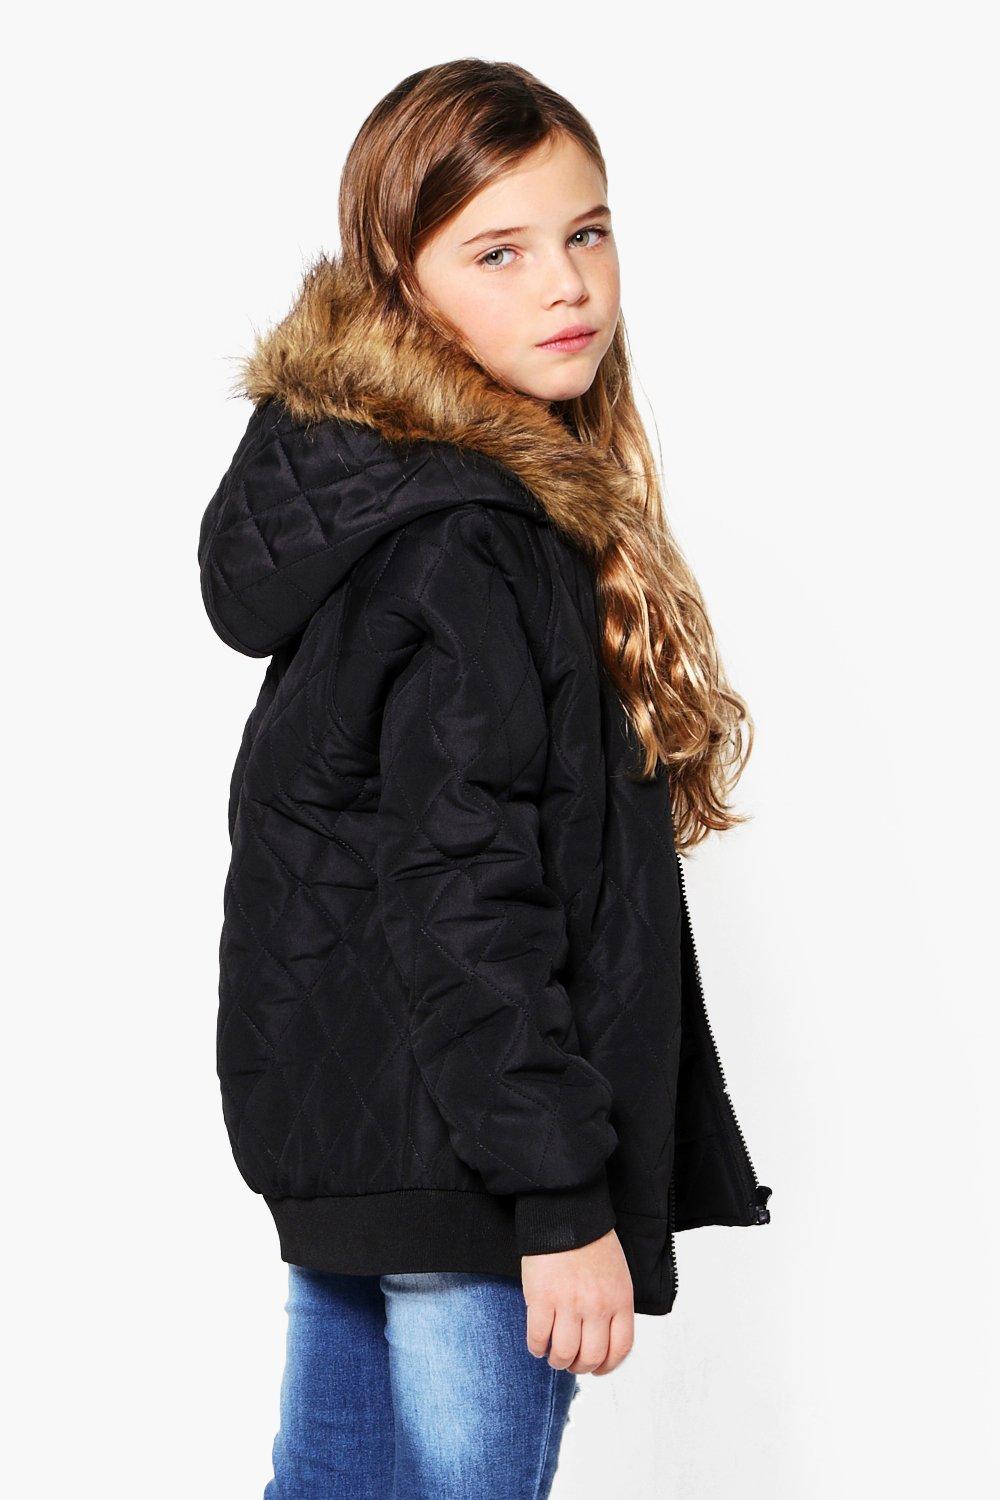 girls hooded bomber jacket